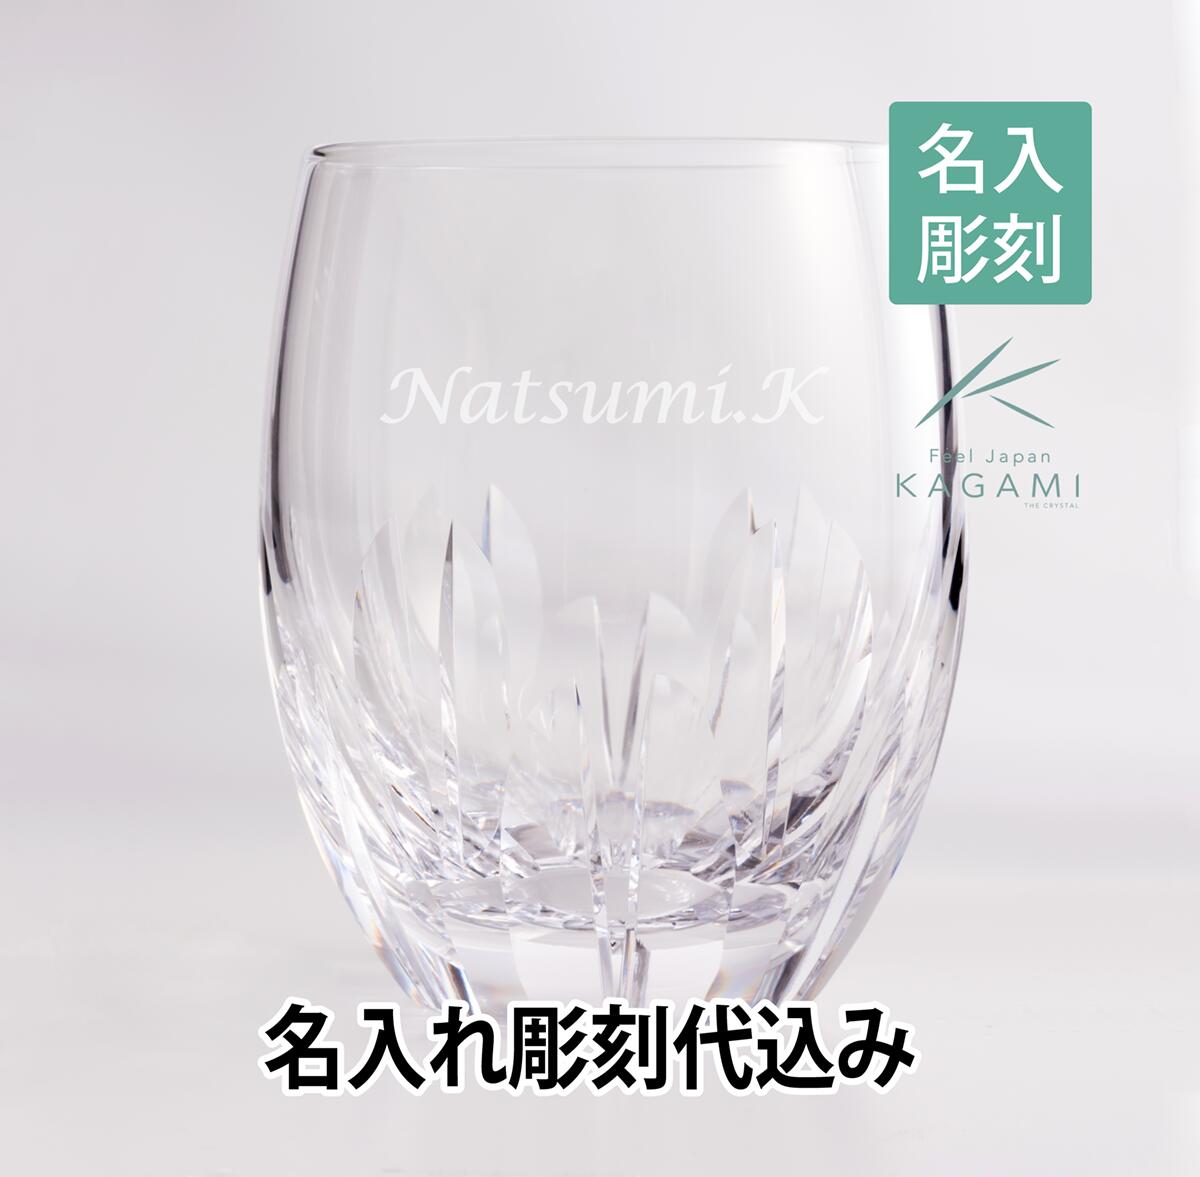 【名入れギフト】KAGAMI カガミクリスタル ロックグラス[T428-640] 名入れ彫刻代込み長寿祝 還暦 父の日 法人記念品 ホールインワン グラス タンブラー